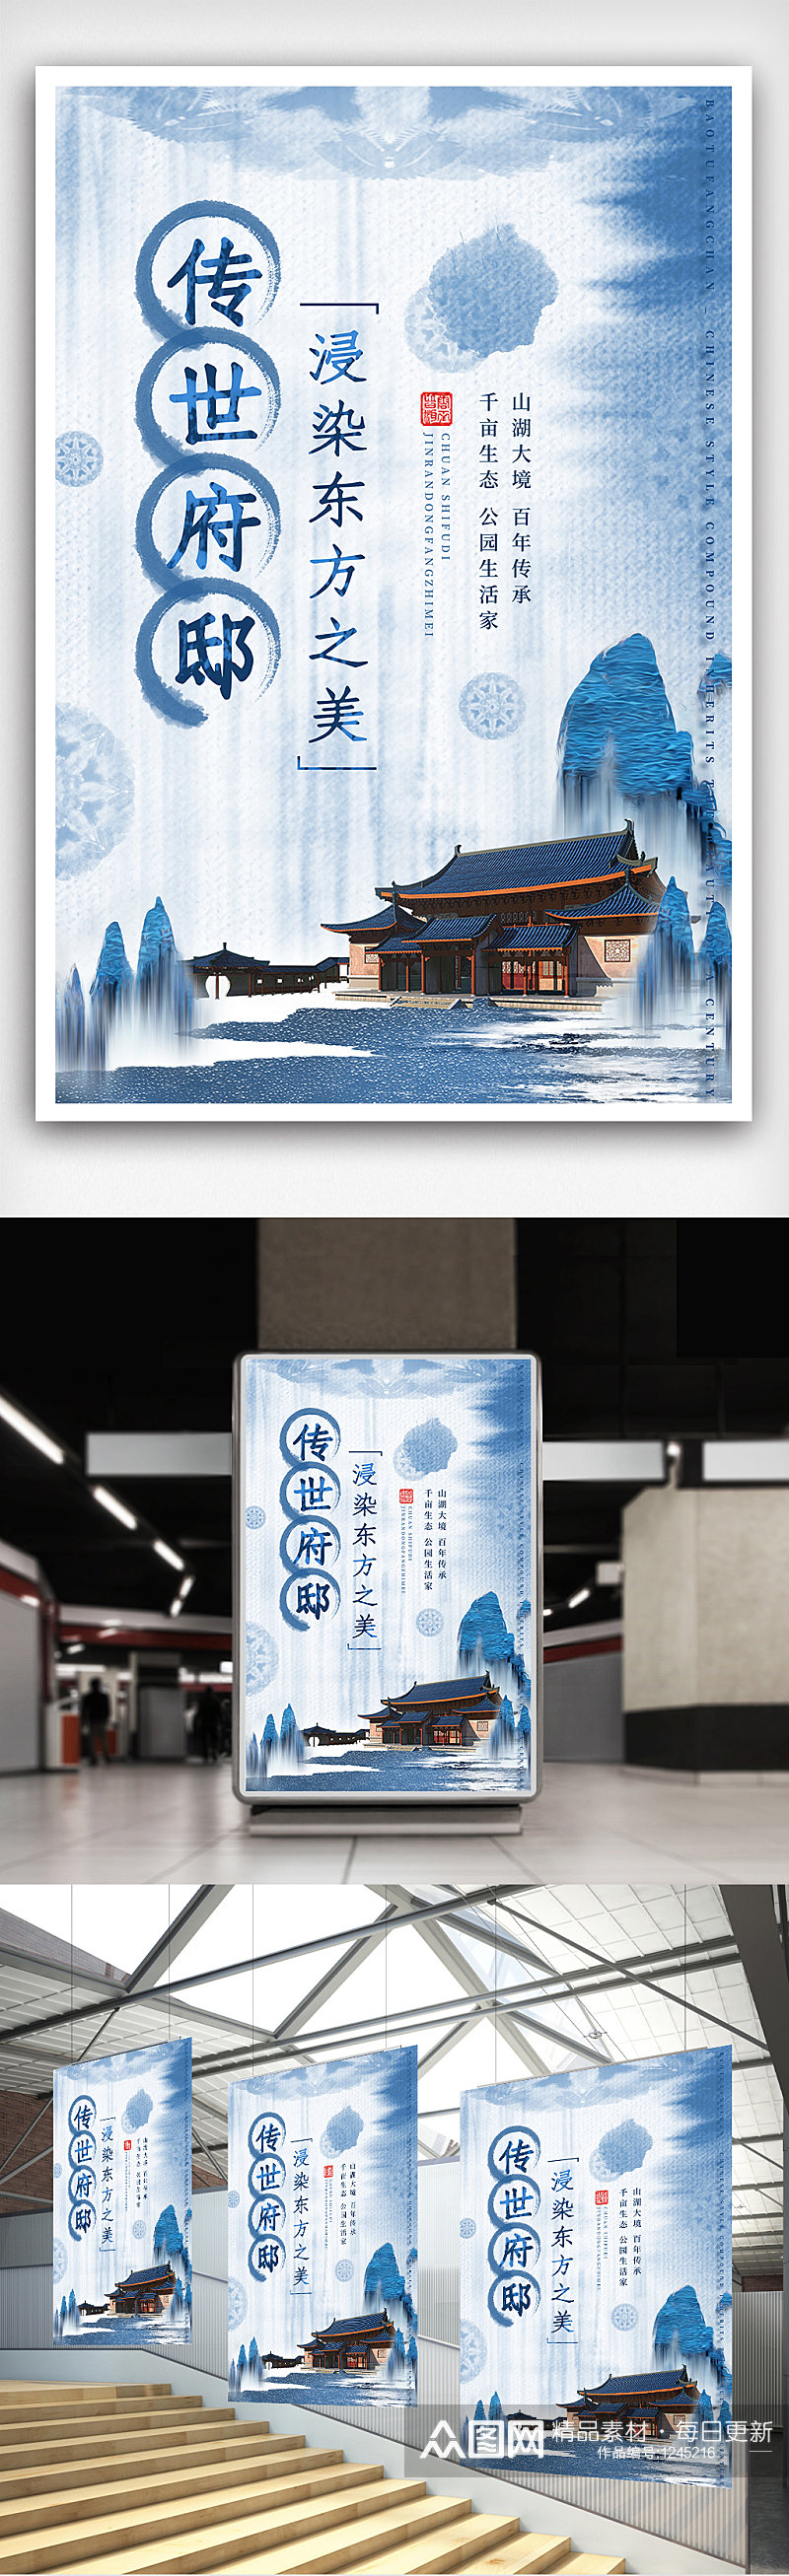 蓝色中国水墨扎染风格大气别墅房地产海报素材